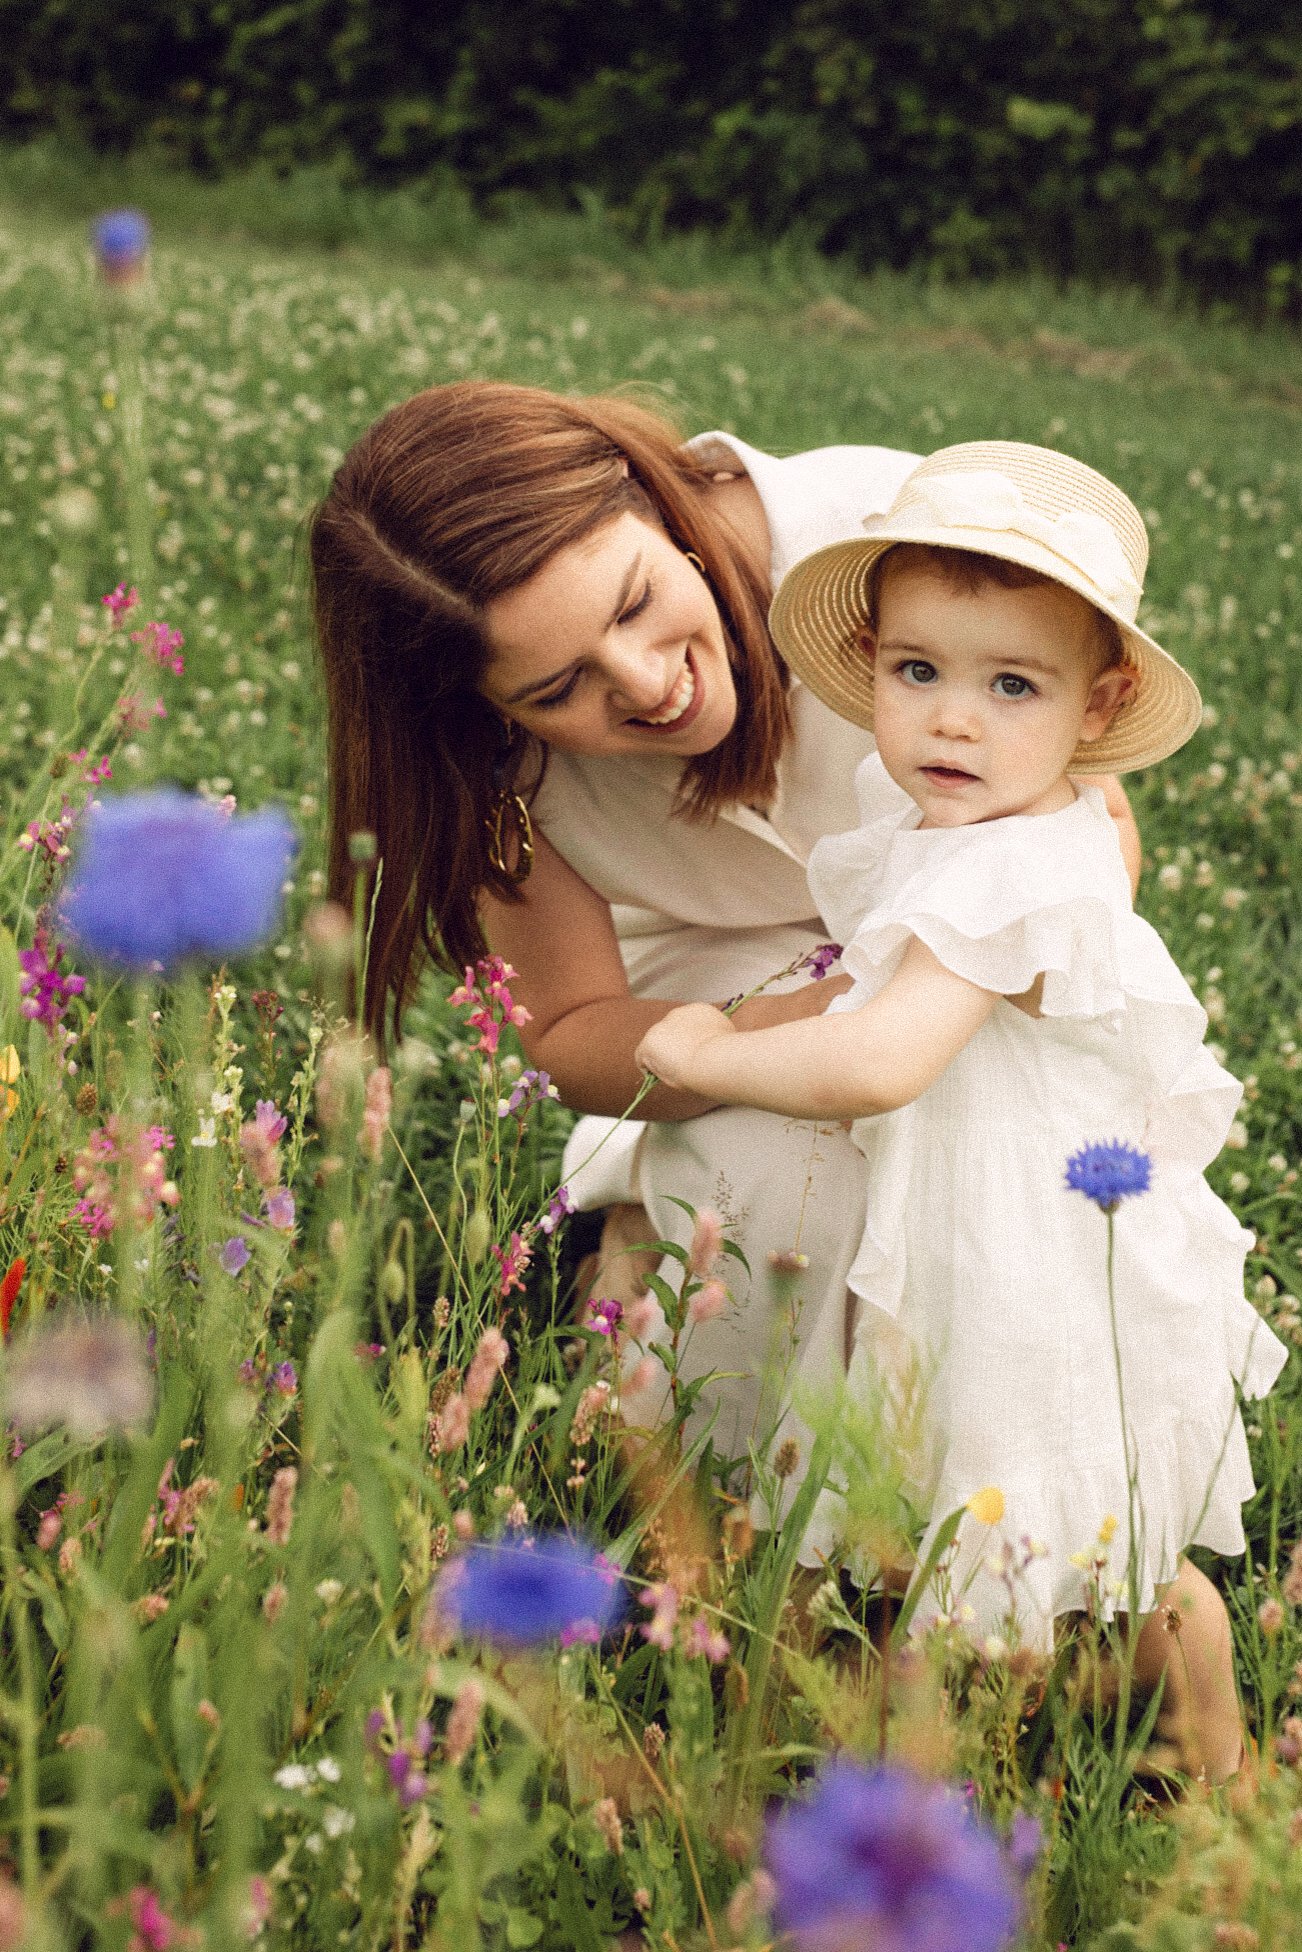 balen-bloemen-fotoshoot-moeder-kind-1.jpg